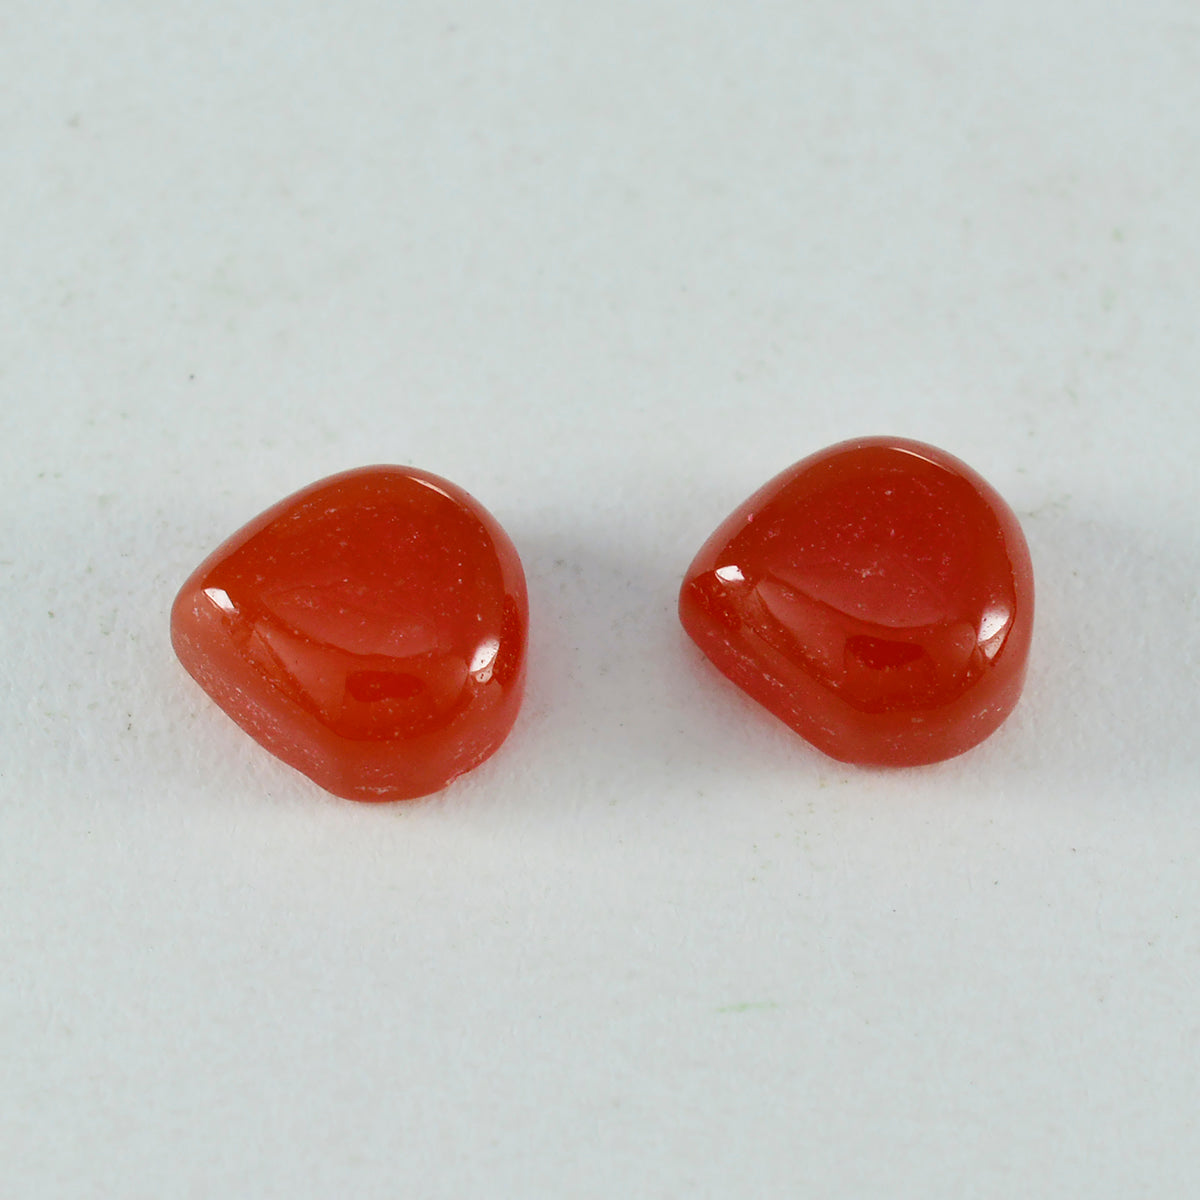 riyogems 1 pieza cabujón de ónix rojo 13x13 mm forma de corazón piedra preciosa suelta de calidad asombrosa